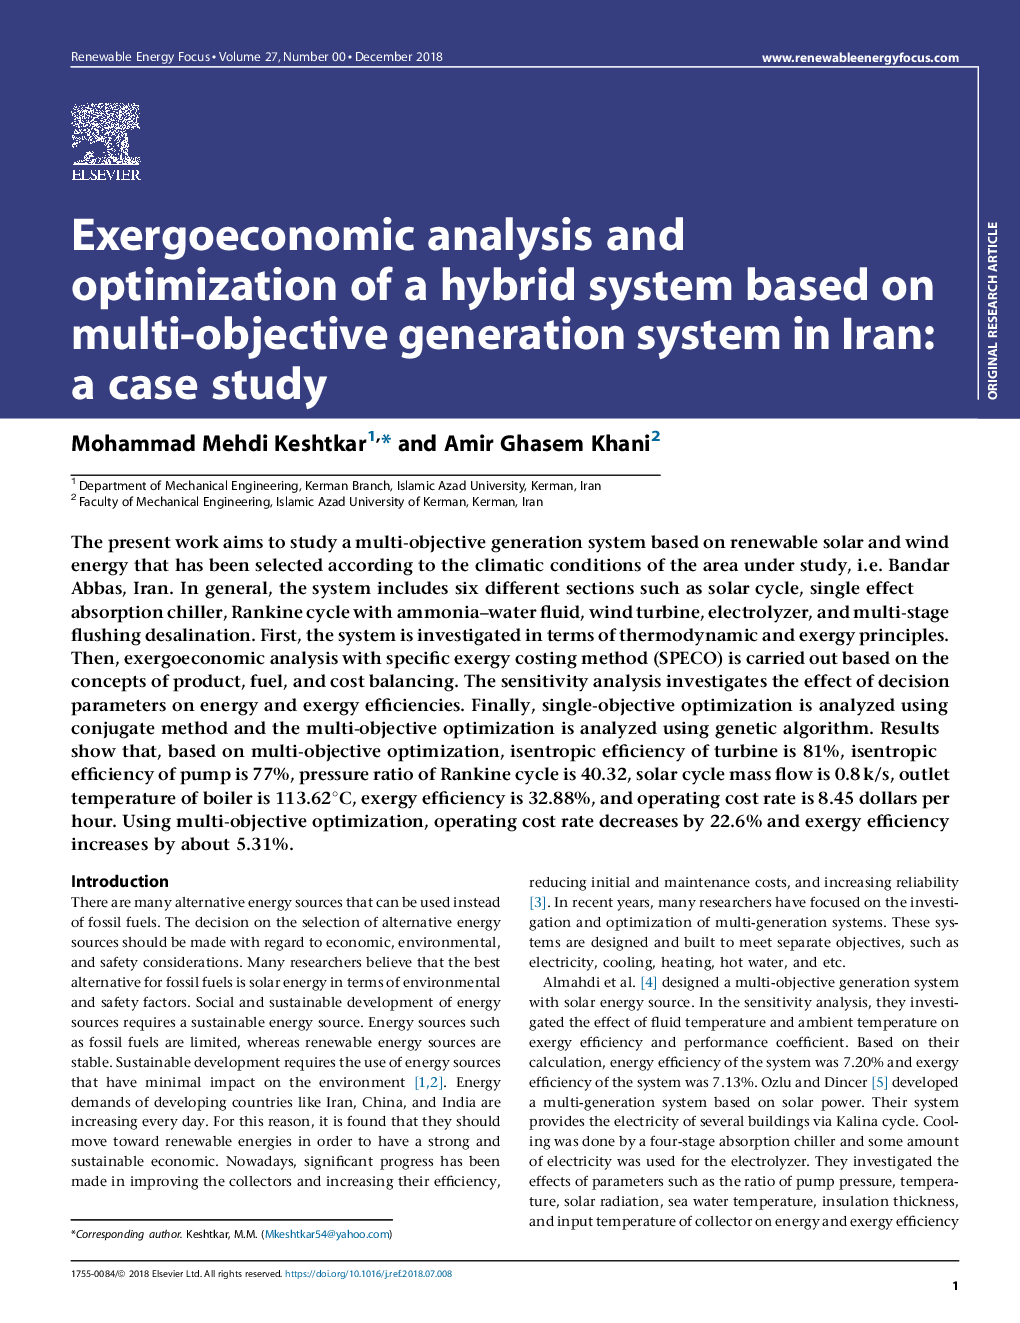 تجزیه و تحلیل اگزوژنتیک و بهینه سازی سیستم ترکیبی مبتنی بر سیستم مولد هدف در ایران: مطالعه موردی